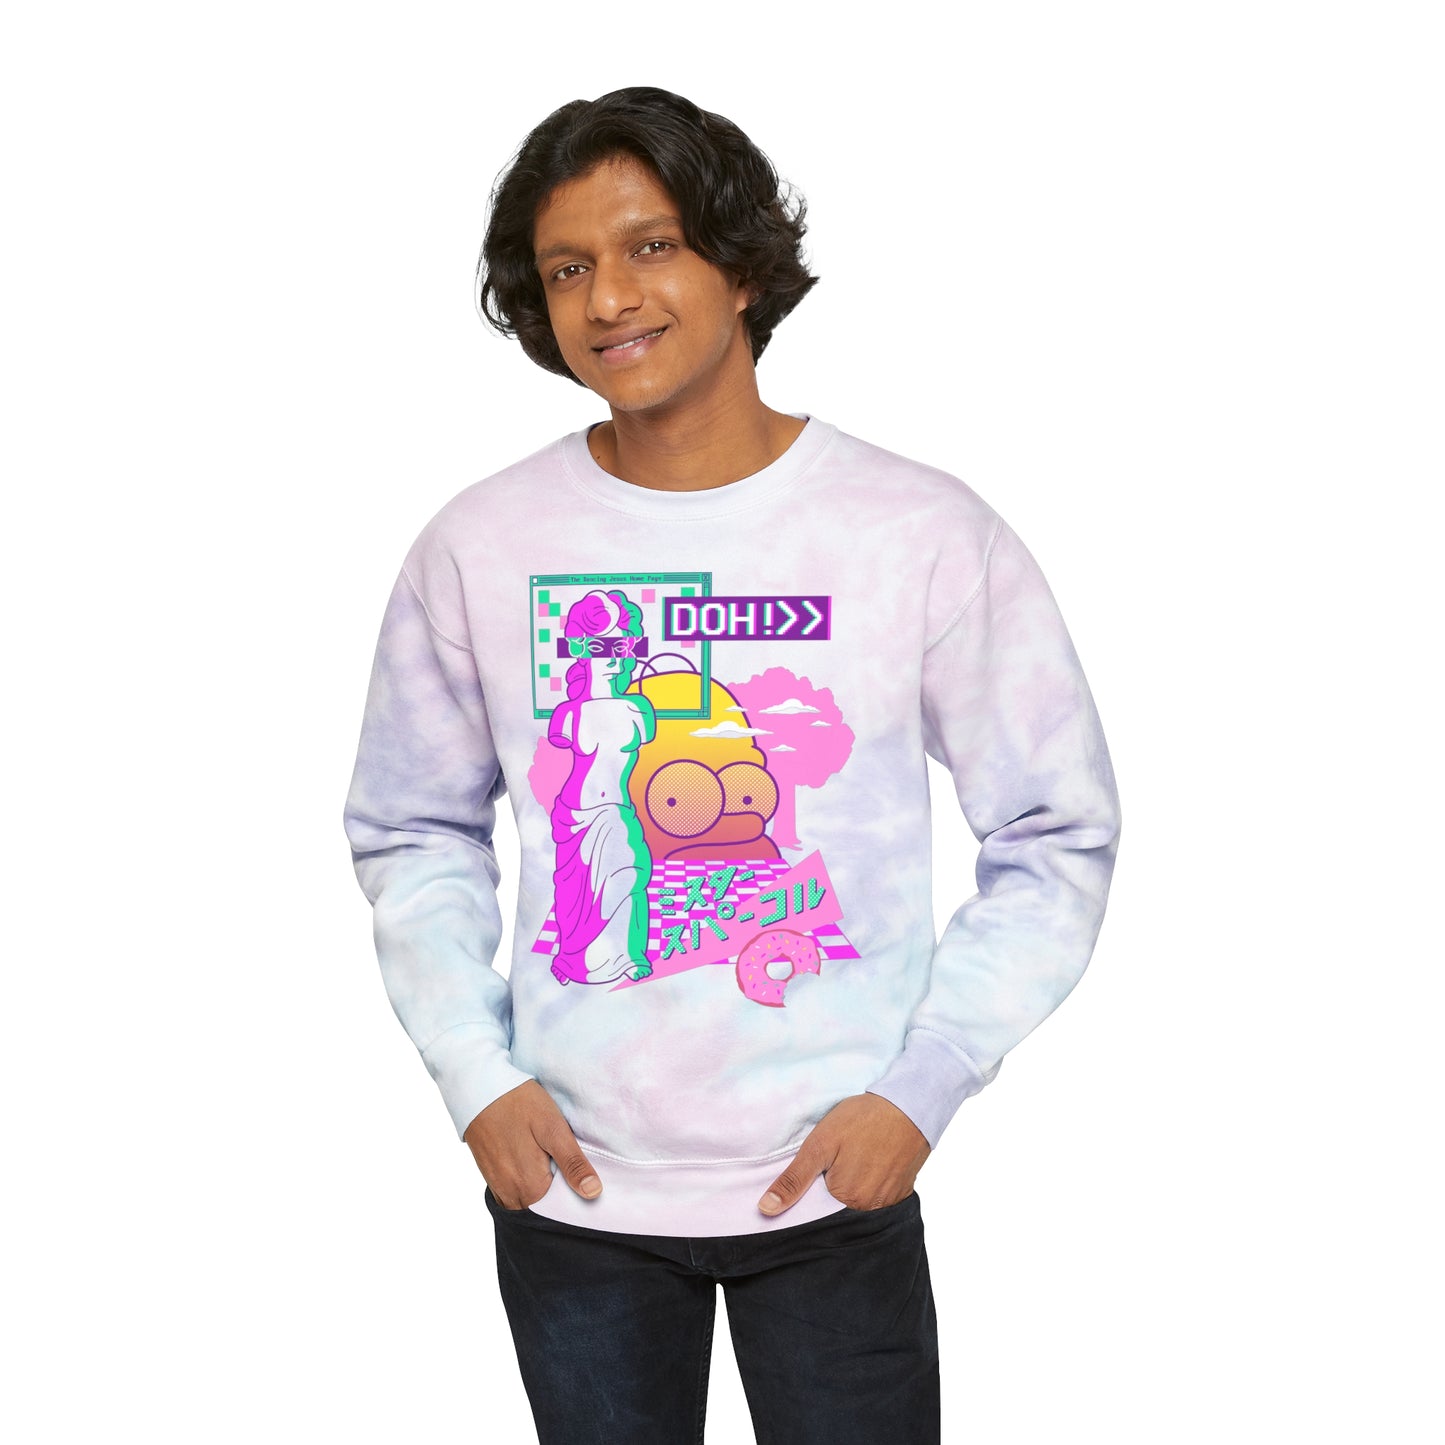 Vapor De Milo tie-dye sweatshirt